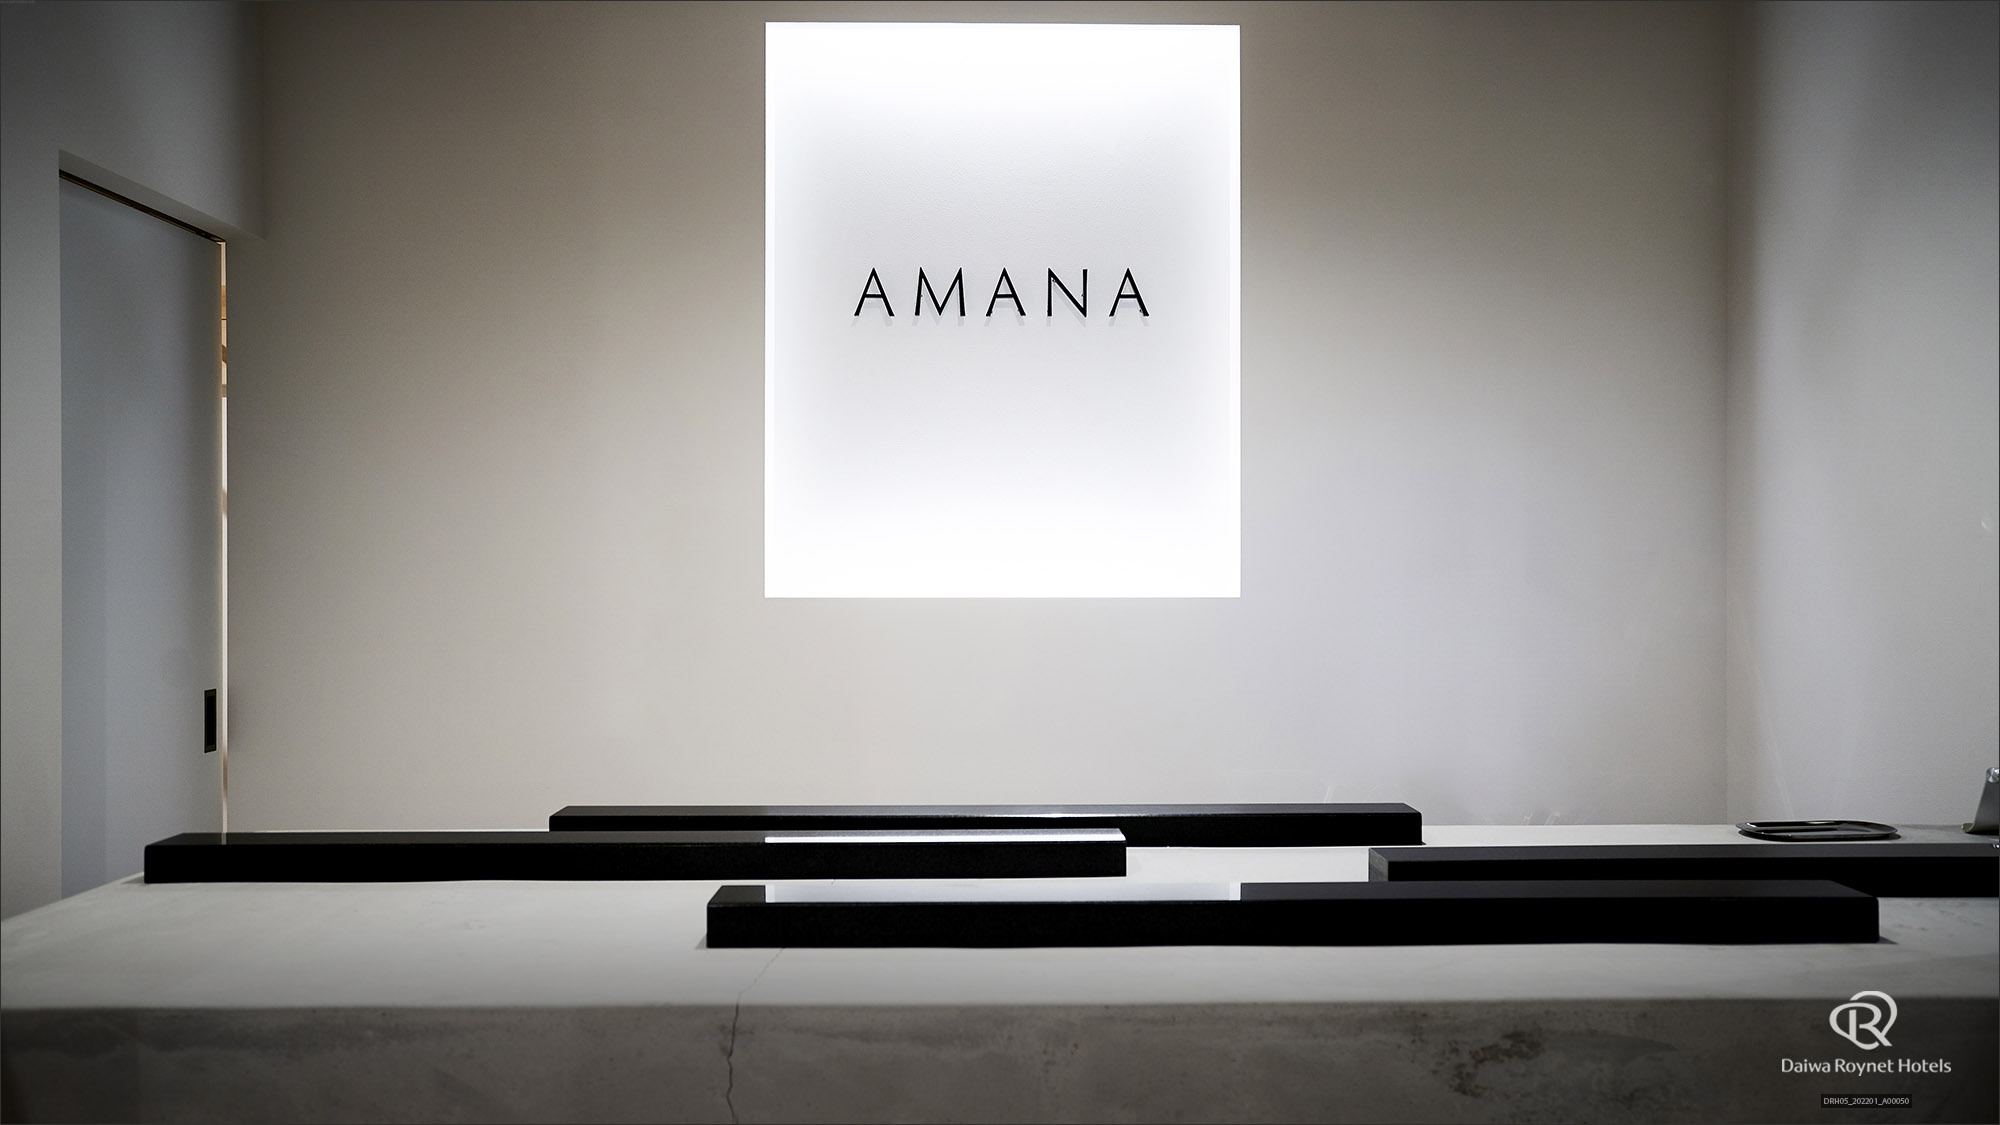 併設のチョコレート専門店「AMANA」です♪詳しくは・・・・♪